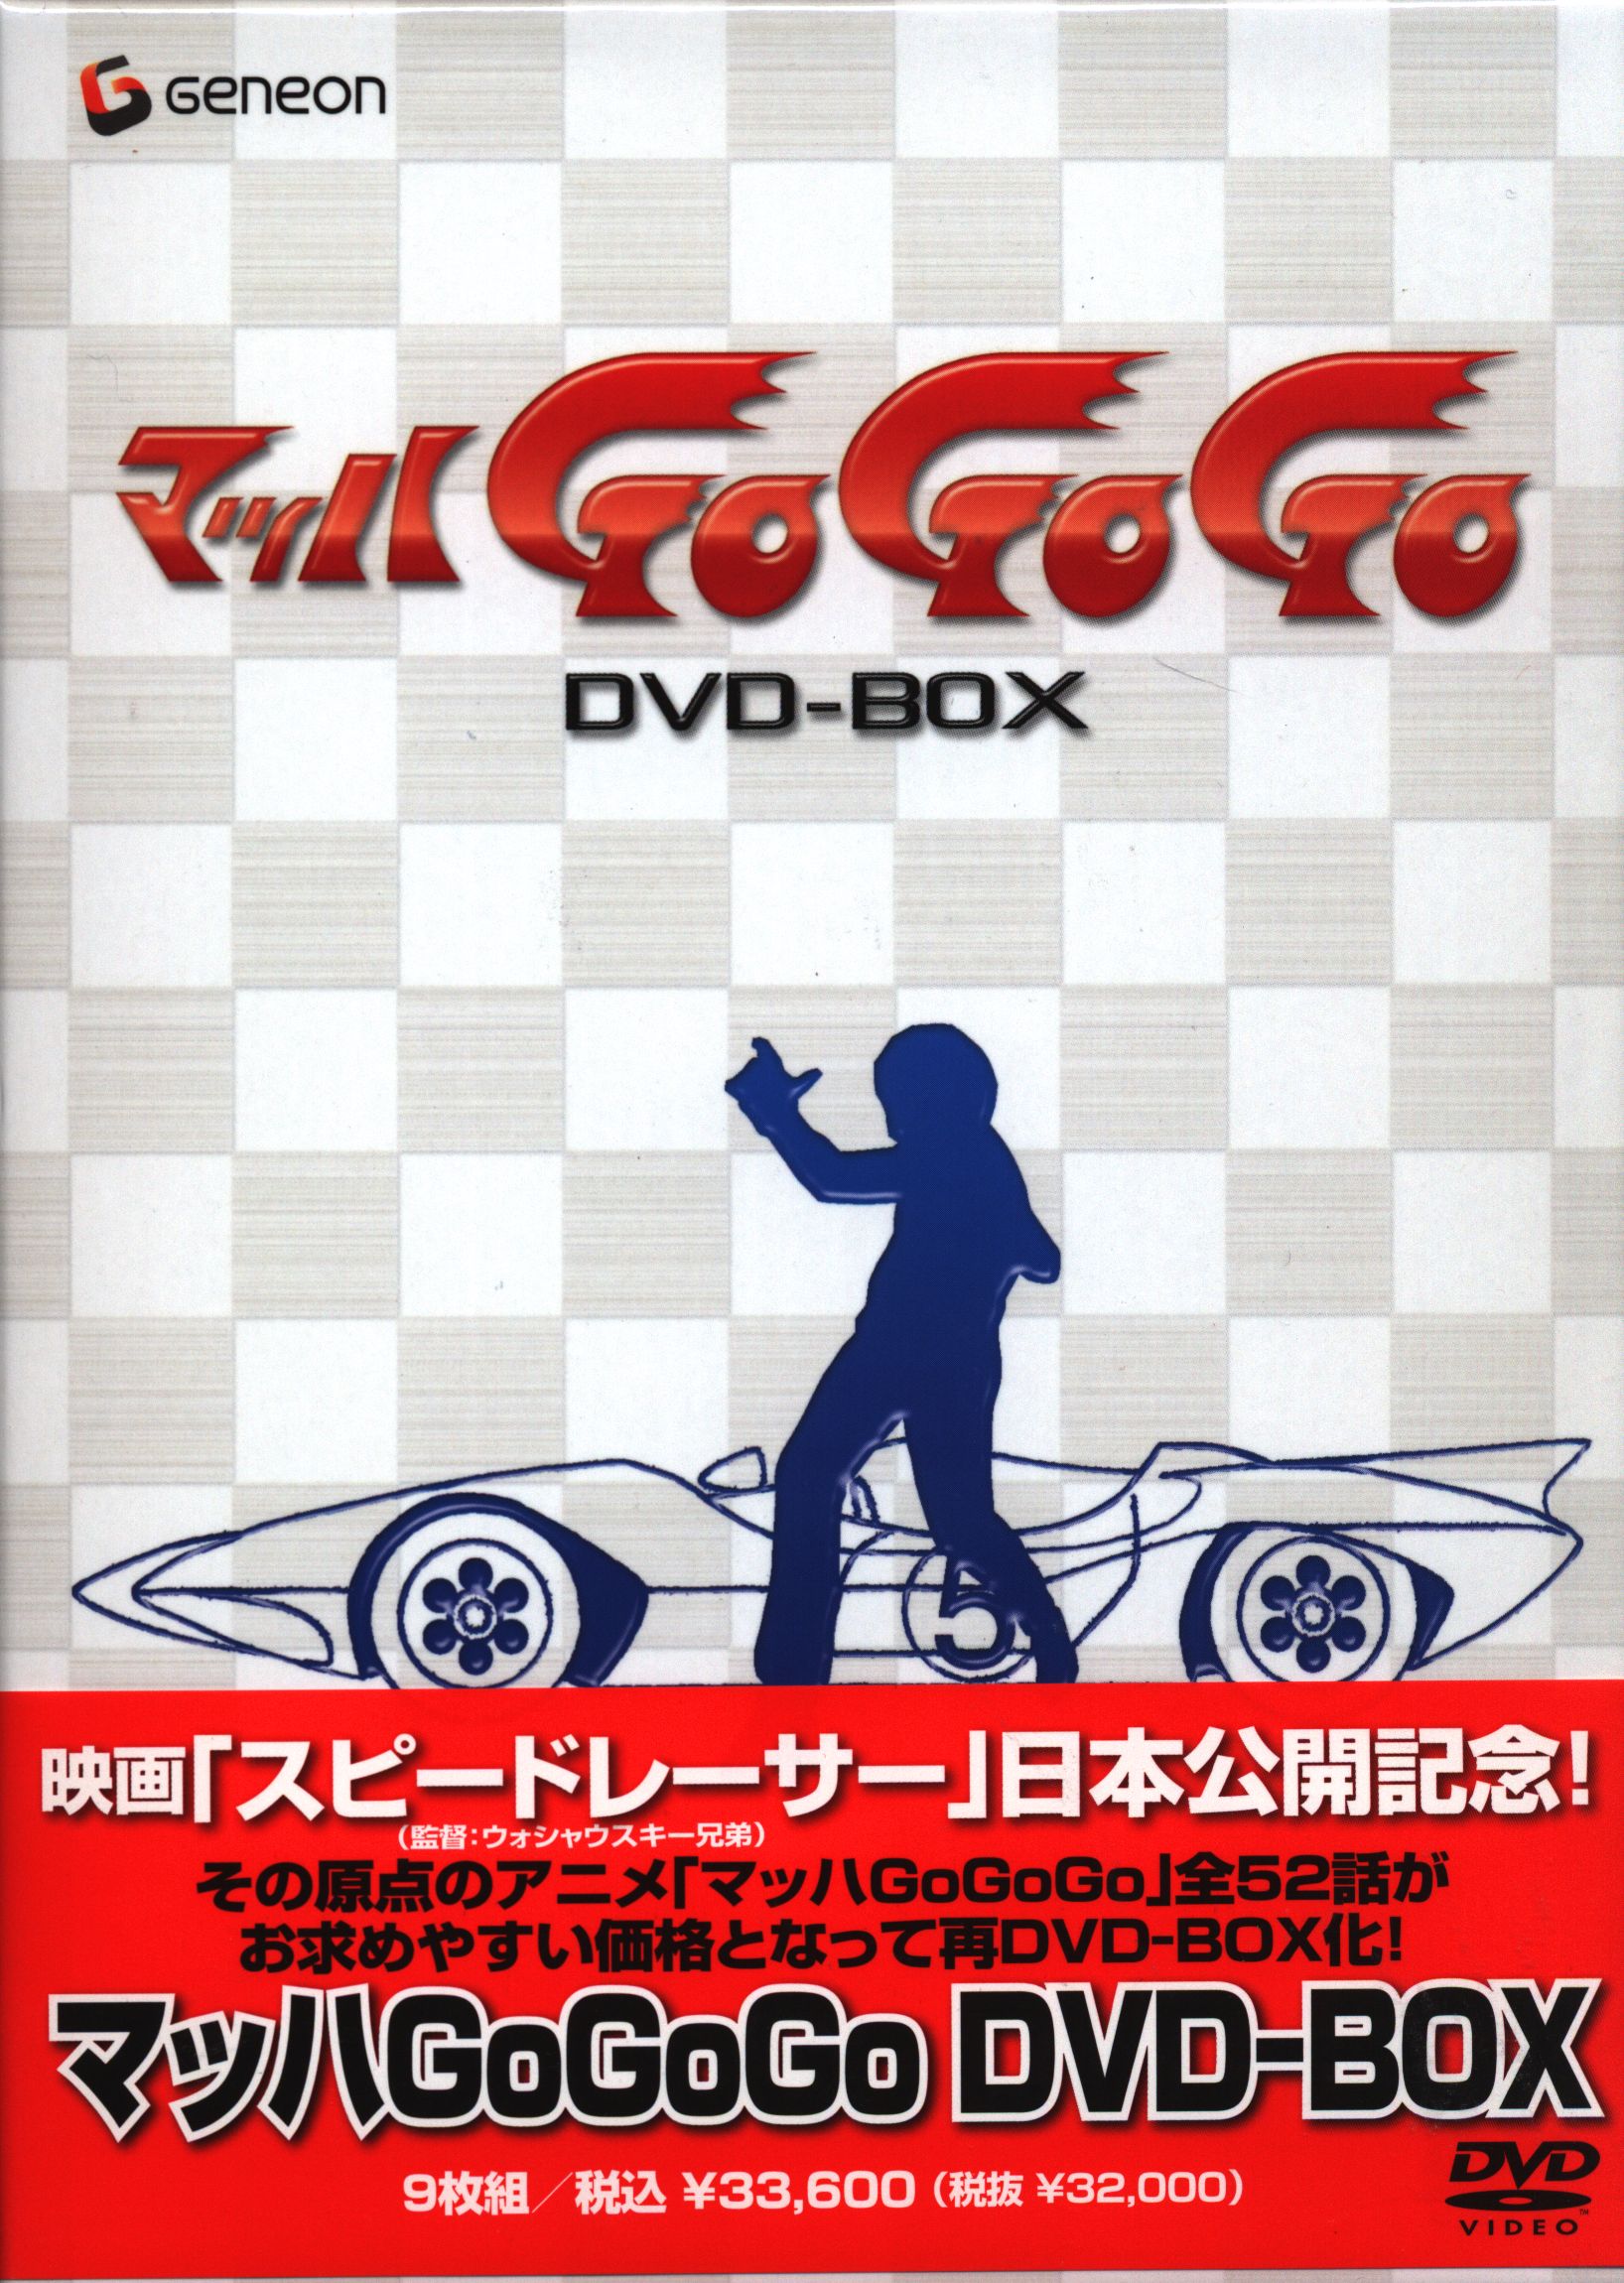 によるアニ マッハGoGoGo DVD-BOXの通販 by sgt サンダース's shop 